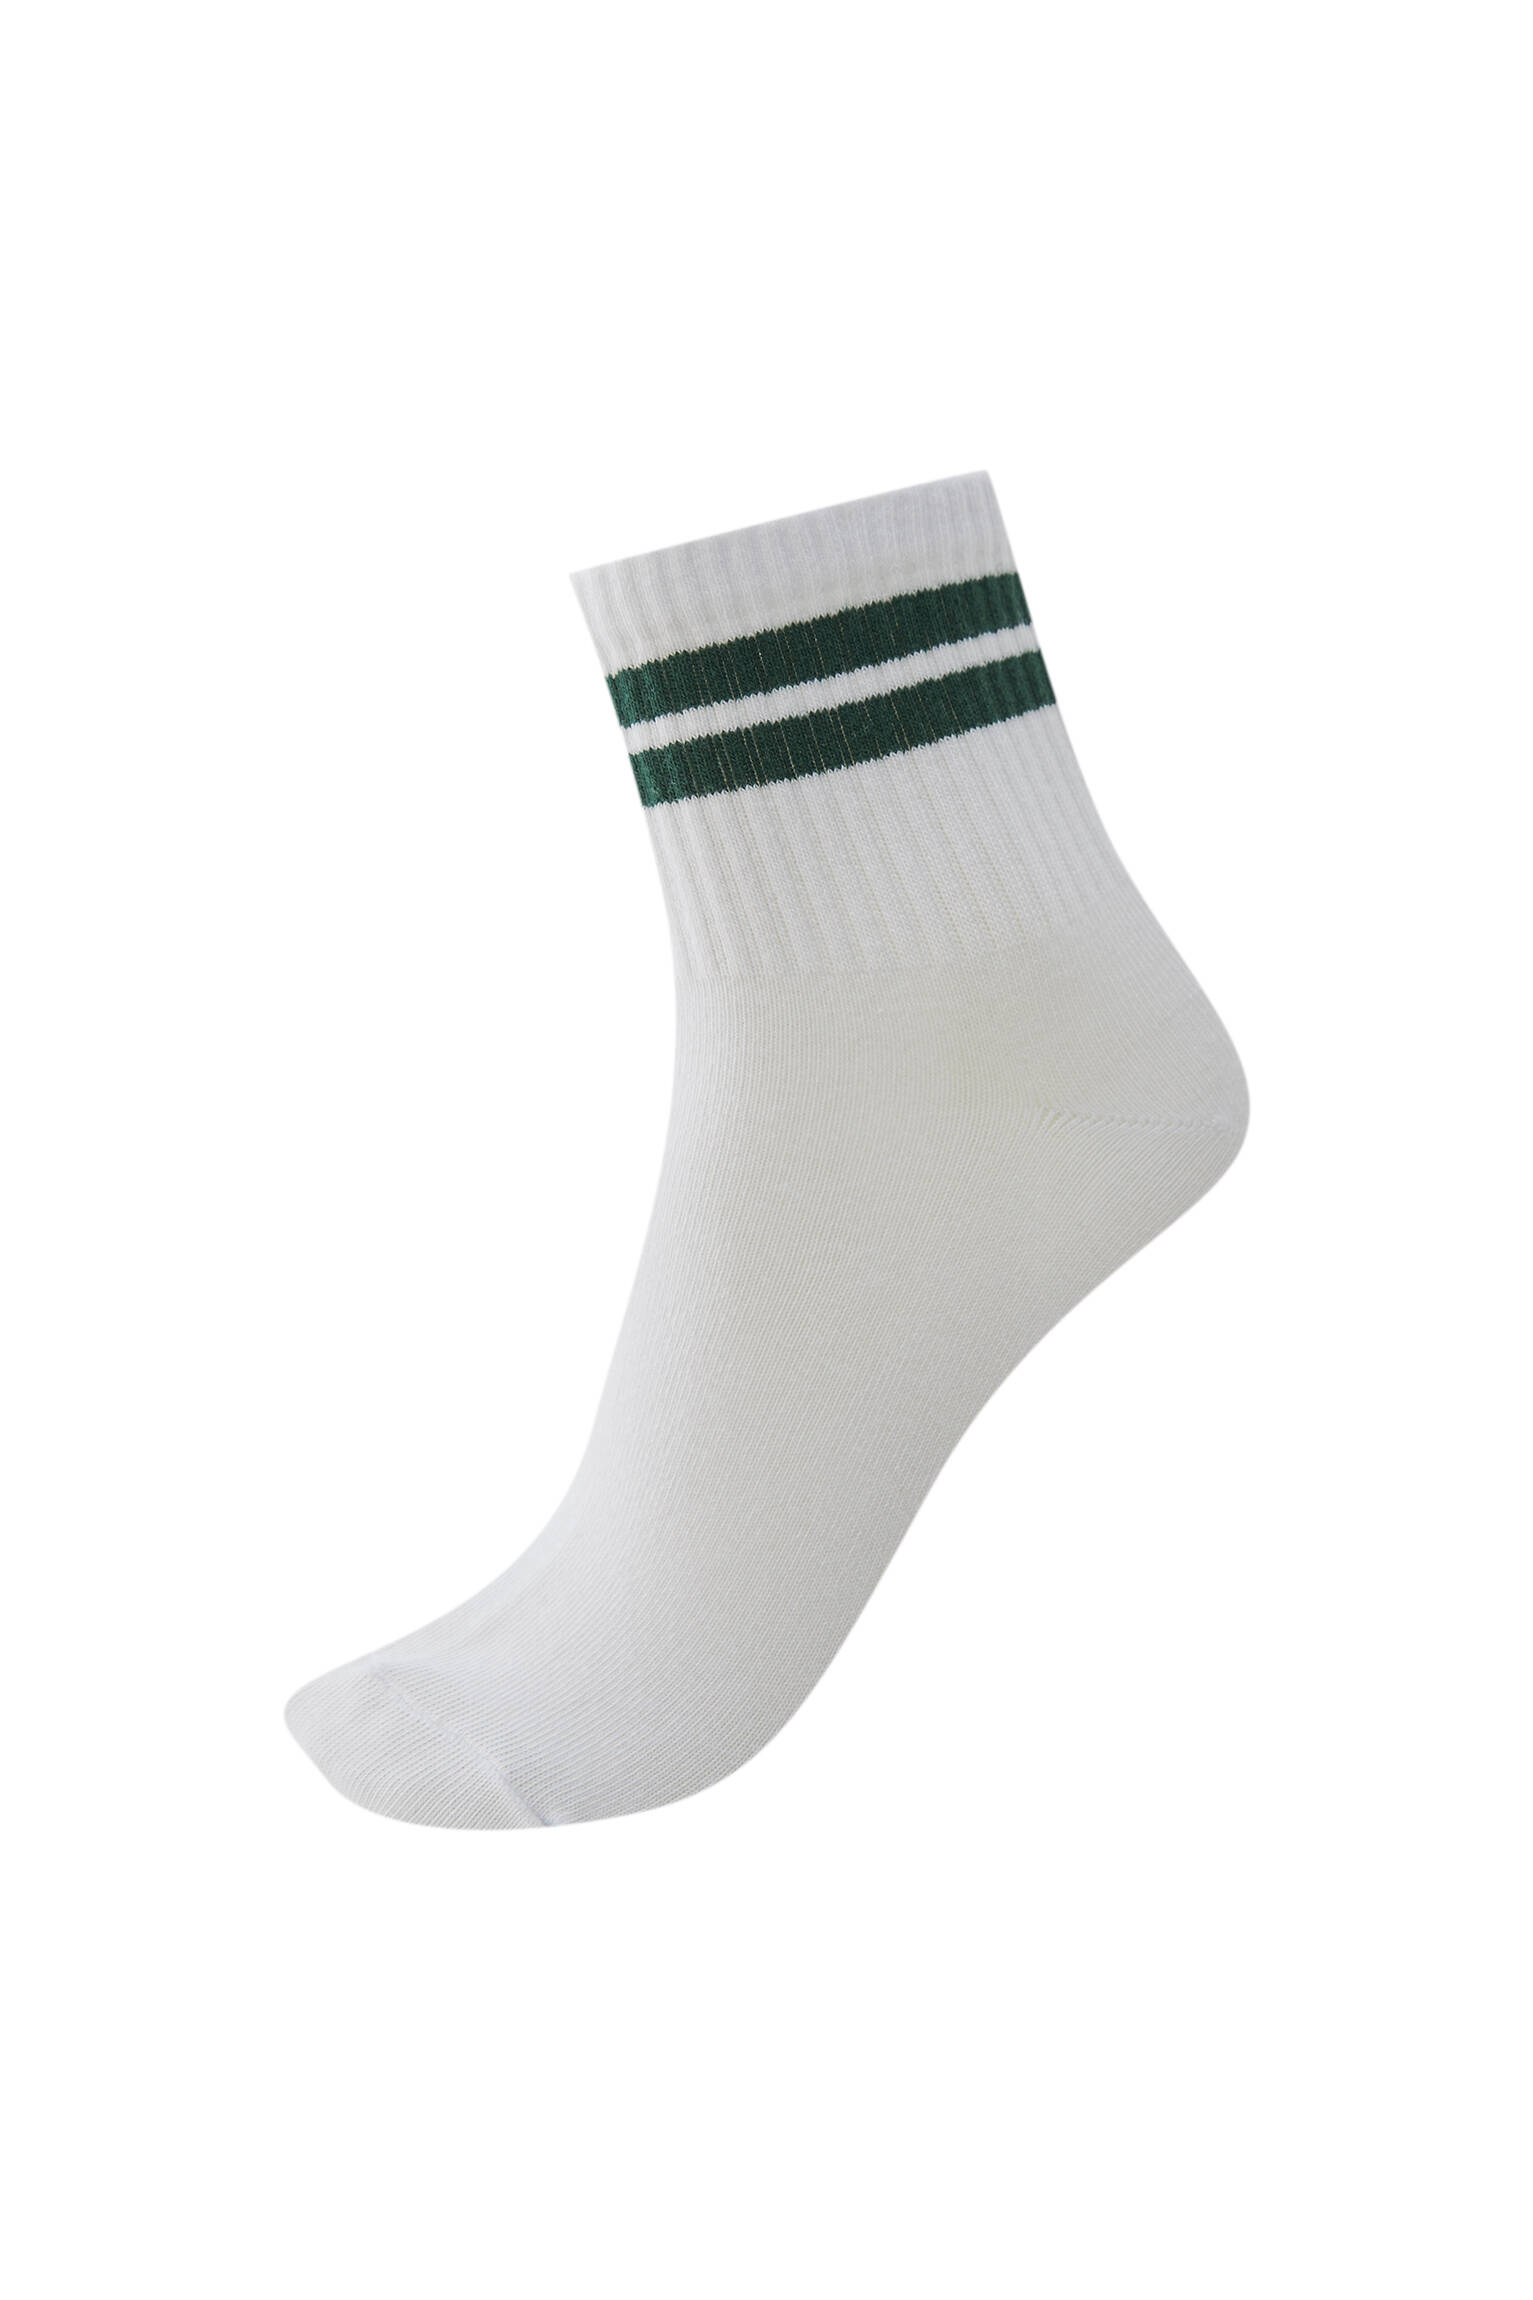 ЗЕЛЕНЫЙ Спортивные носки с двумя полосами. Органический хлопок (не менее 75%). Pull & Bear